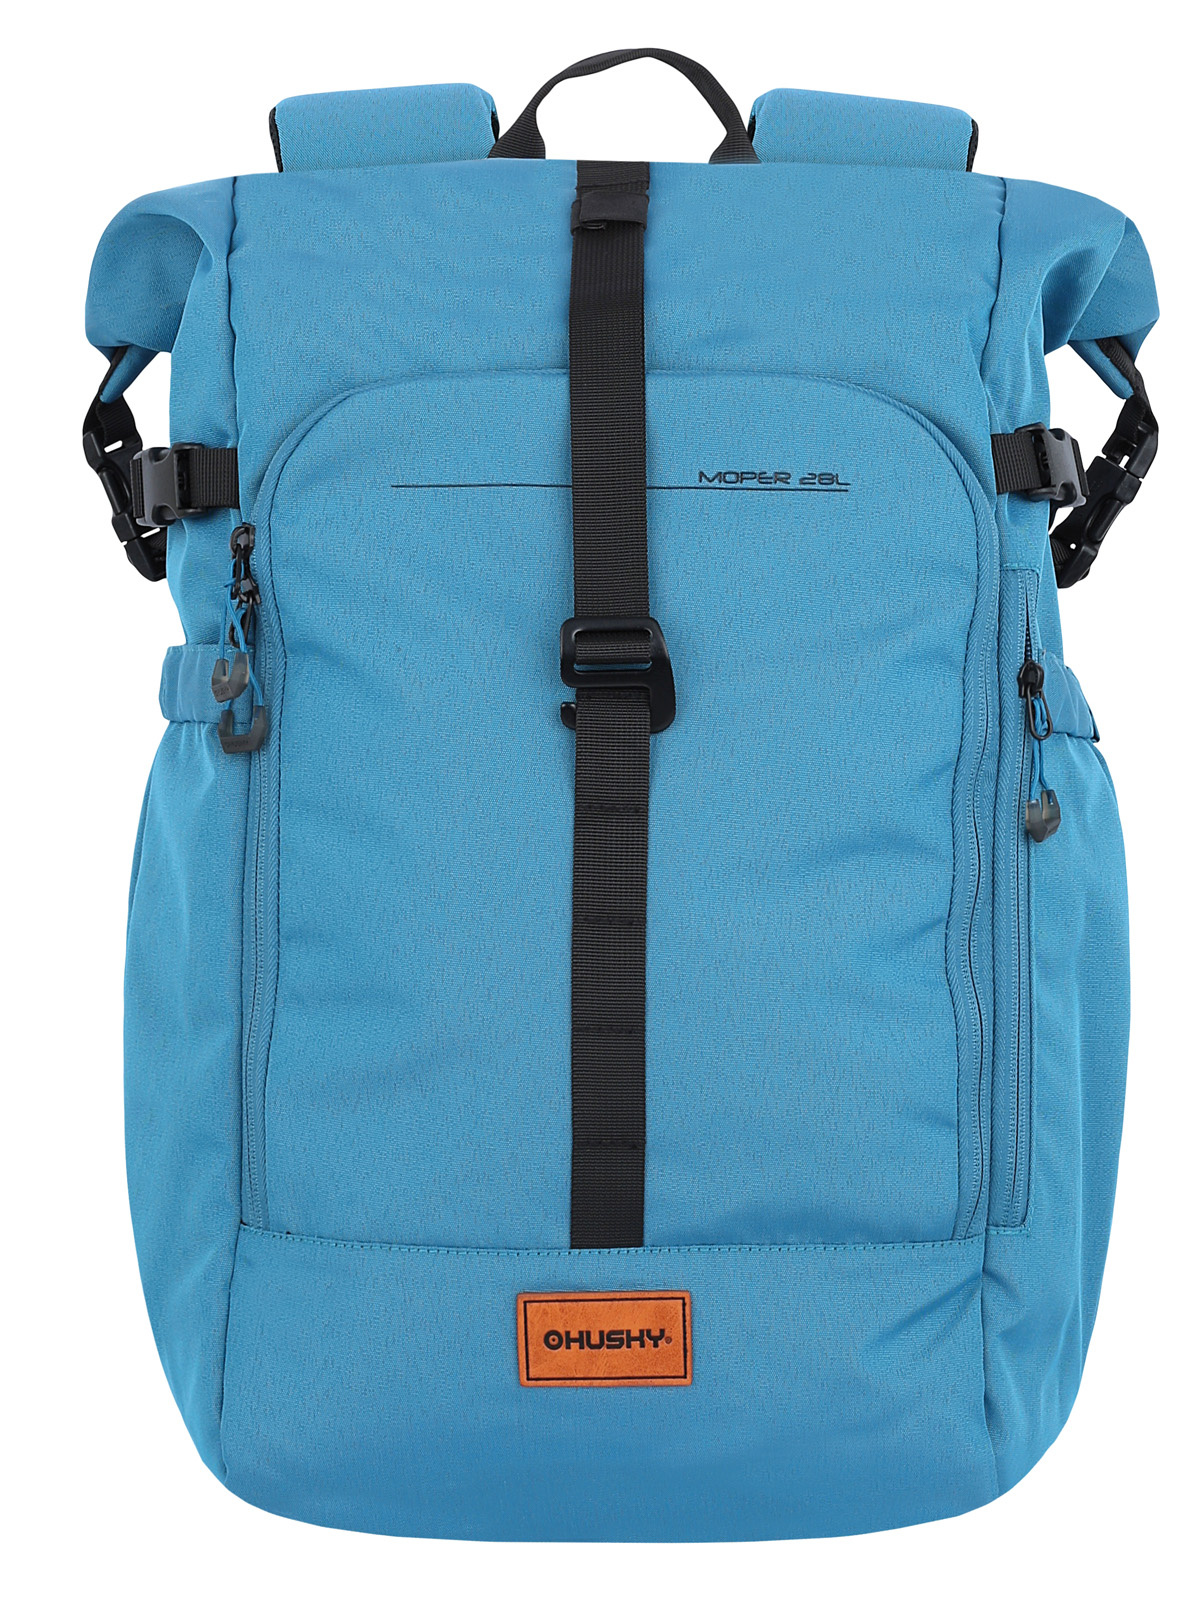 Backpack Office HUSKY Moper 28l light blue